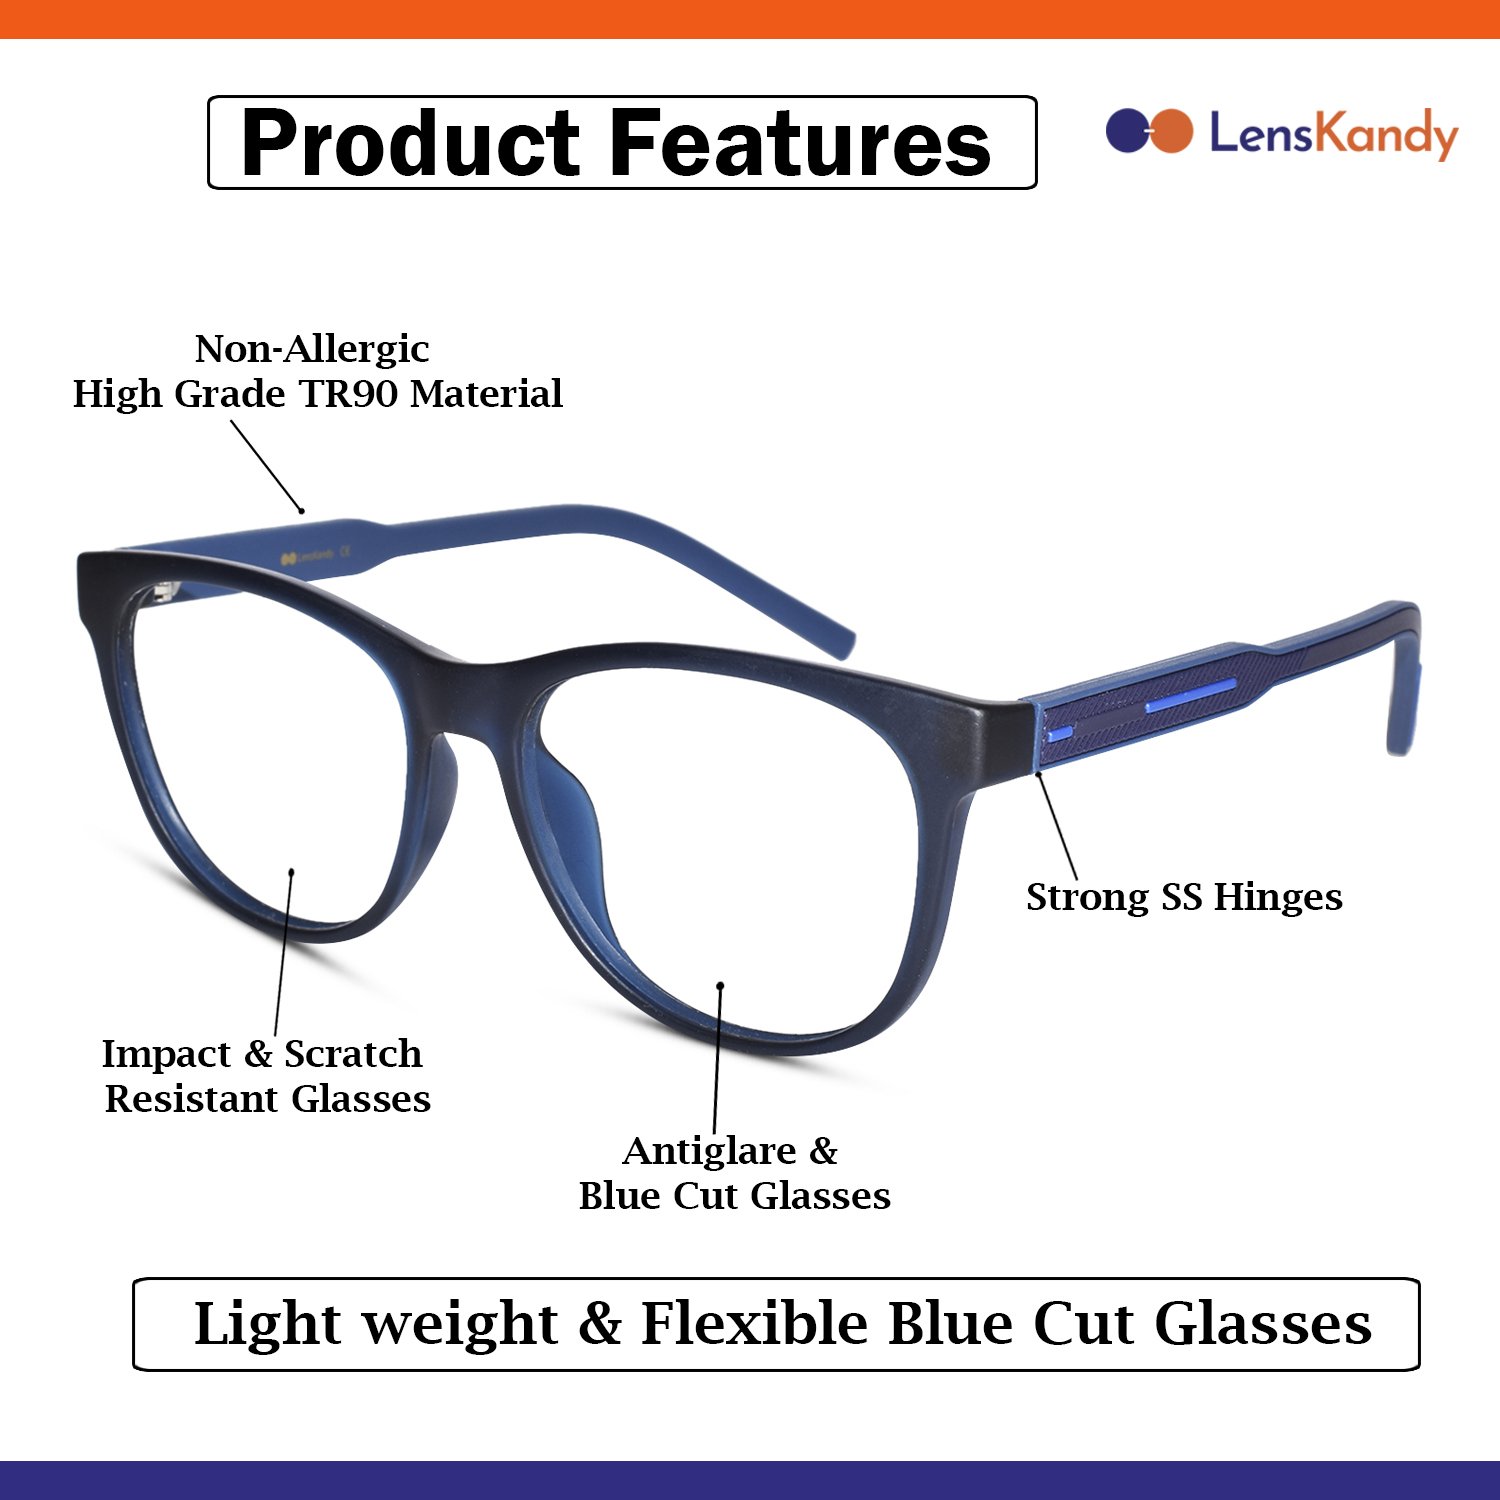 Wayfarer Shape Blue Eyeglasses for Men & Women